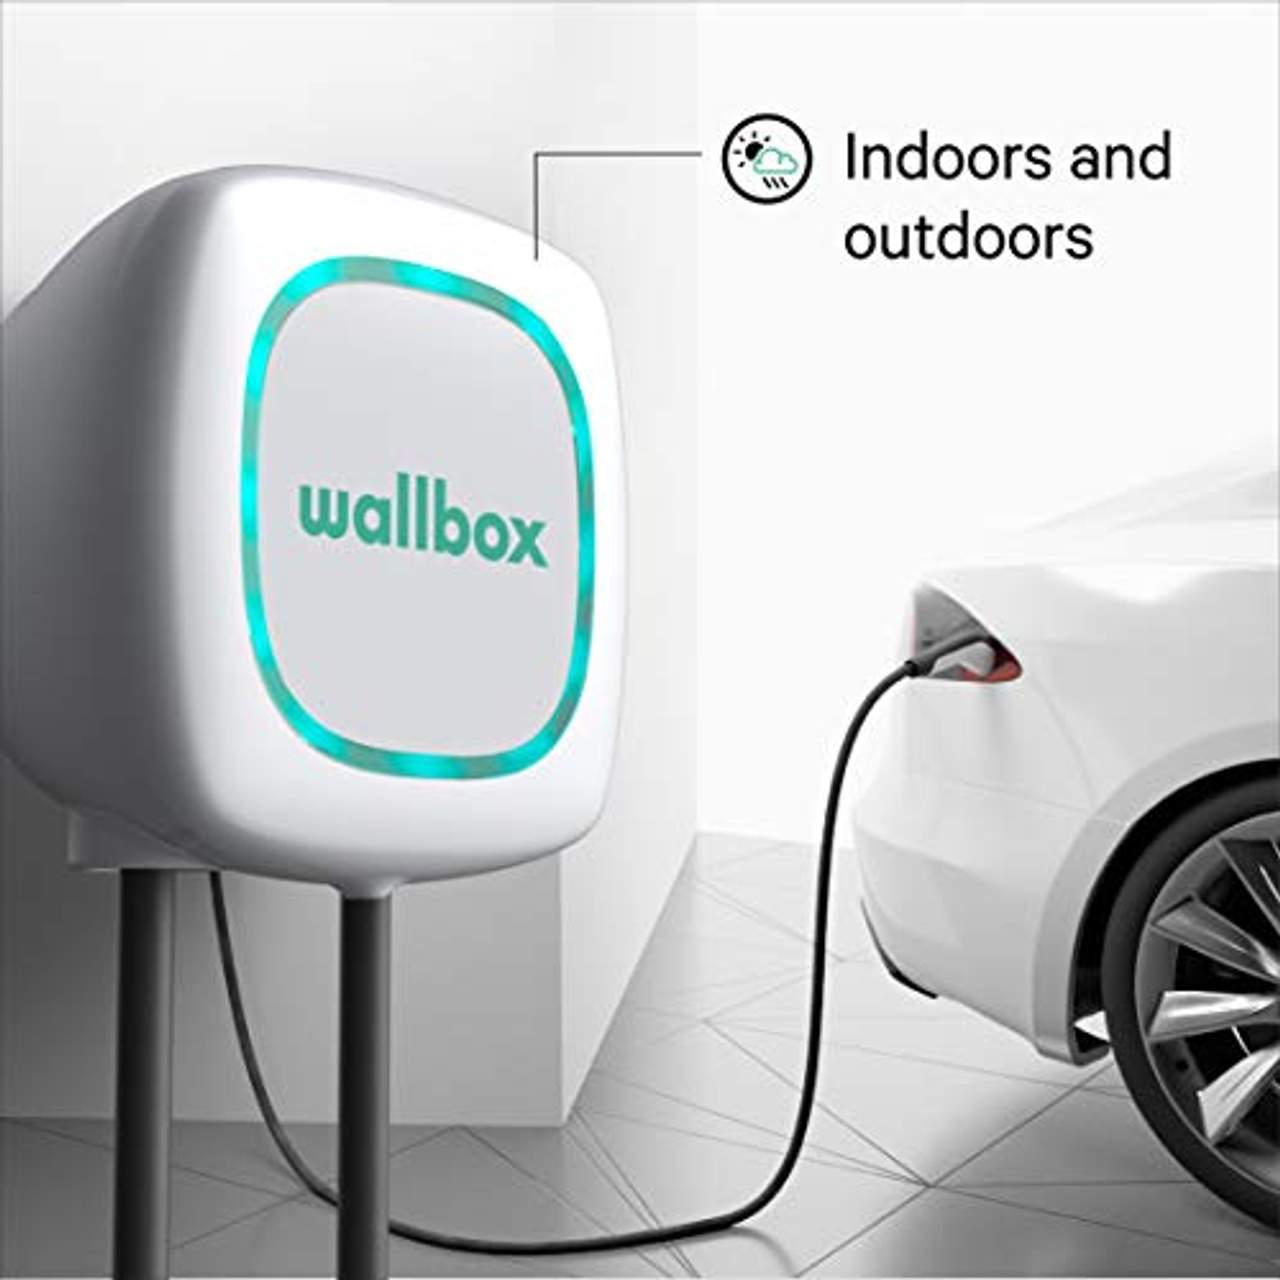 Wallbox Pulsar Ladesystem für Elektroautos Ladeleistung bis zu 22kw